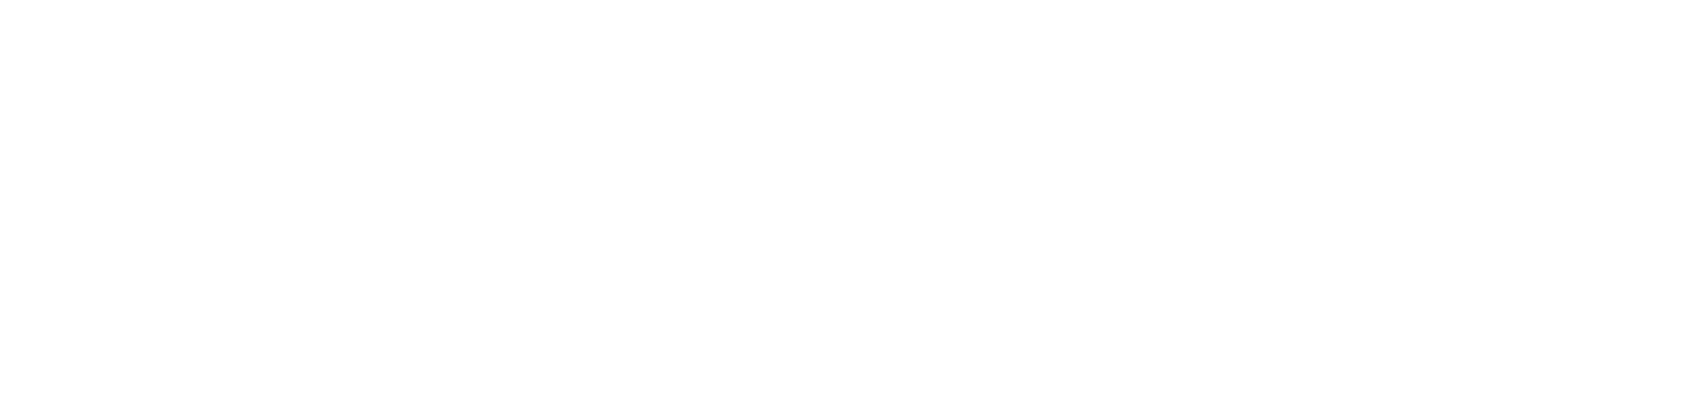 Hawkeye Systems, Inc.